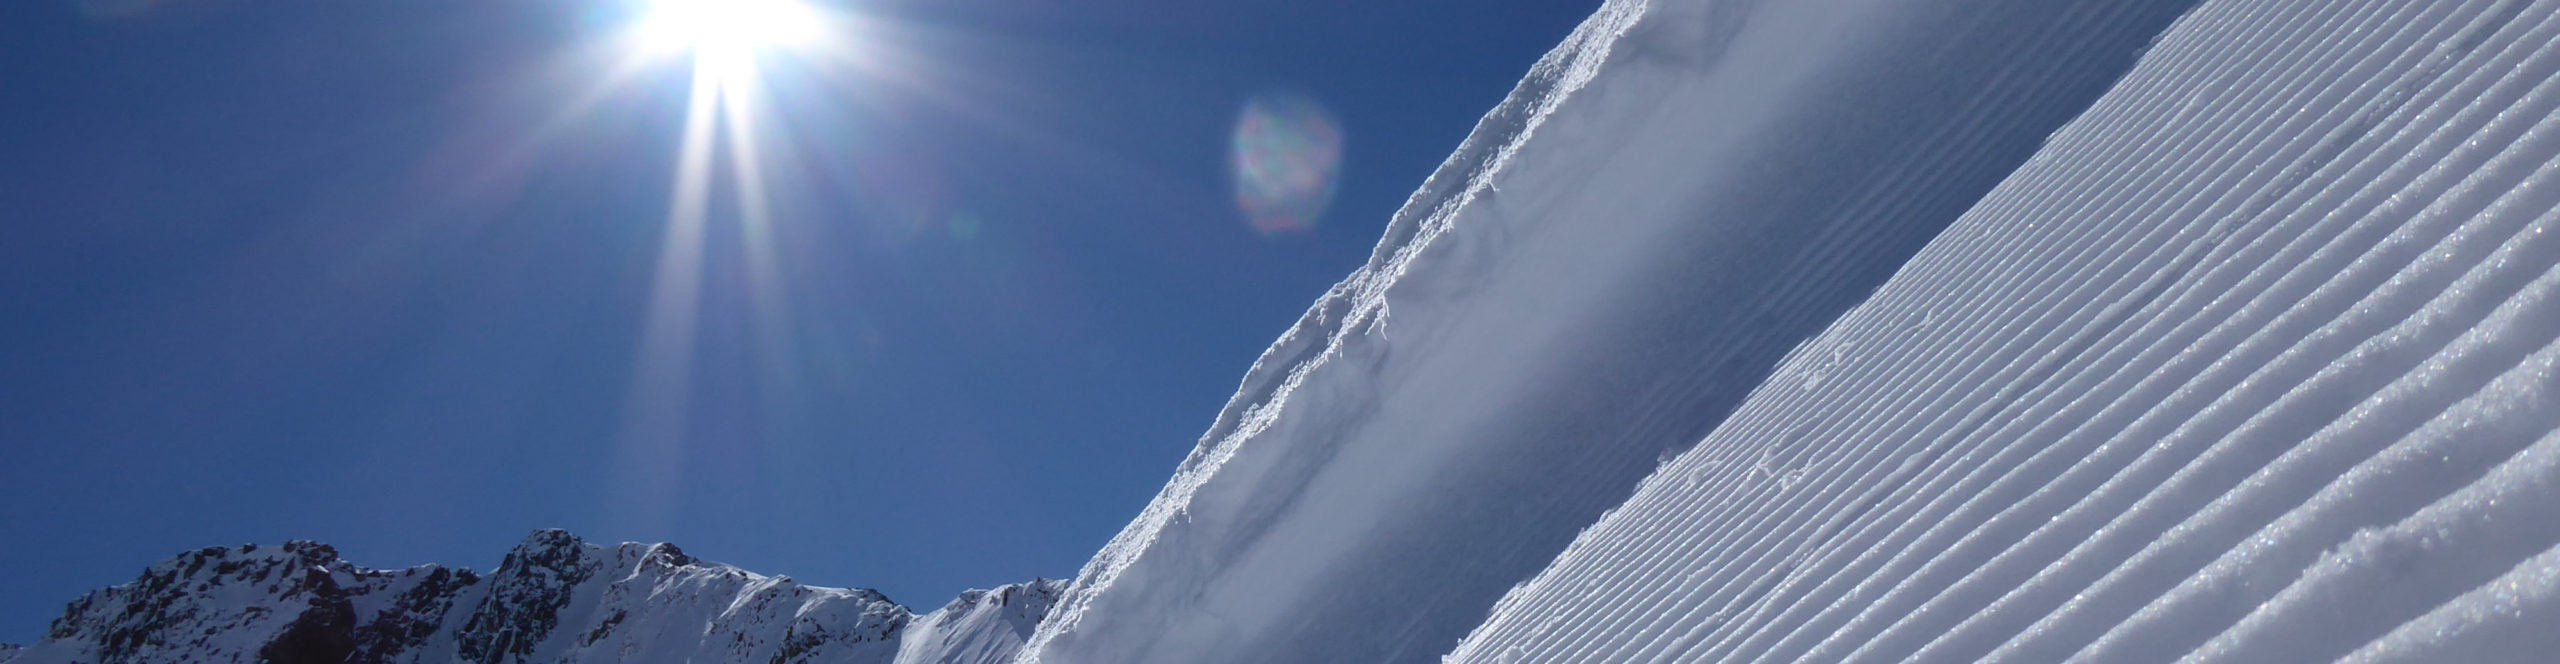 ZILLERTAL- MAYRHOFEN- SchneeSpaßTag – Tagesskireise ins aktivsten Tal der Alpen 